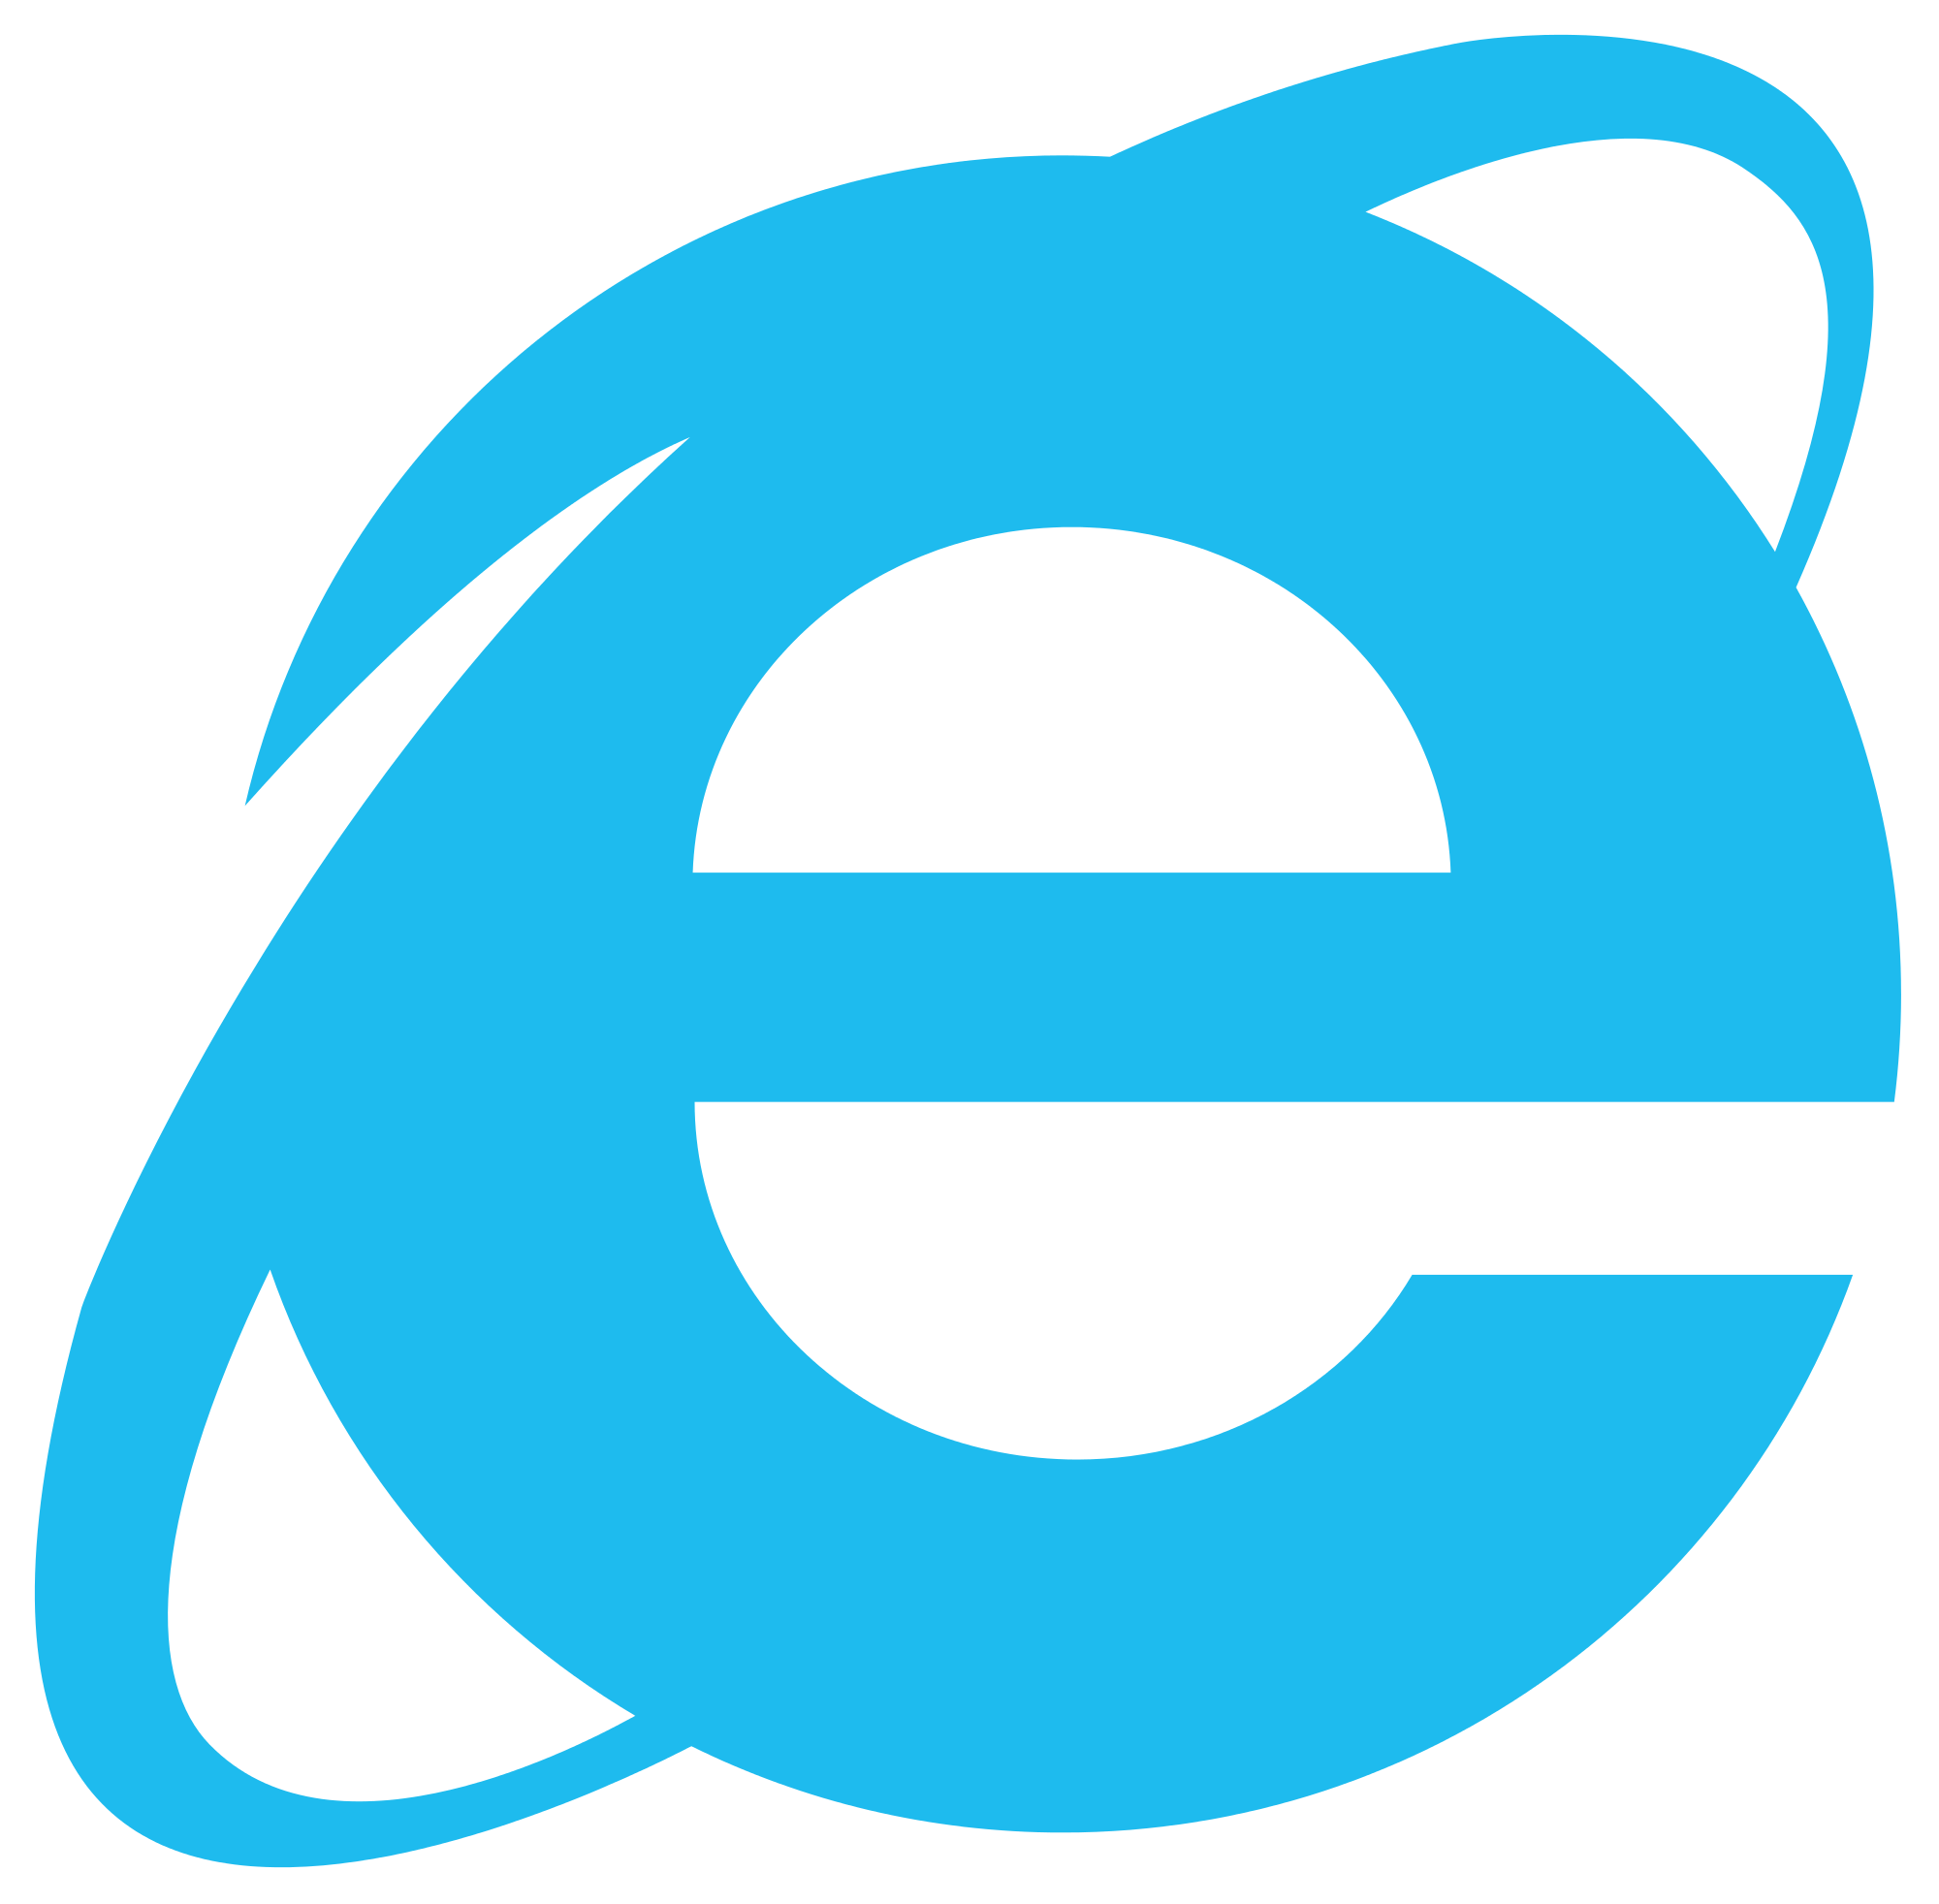 Internet Explorer logo PNG